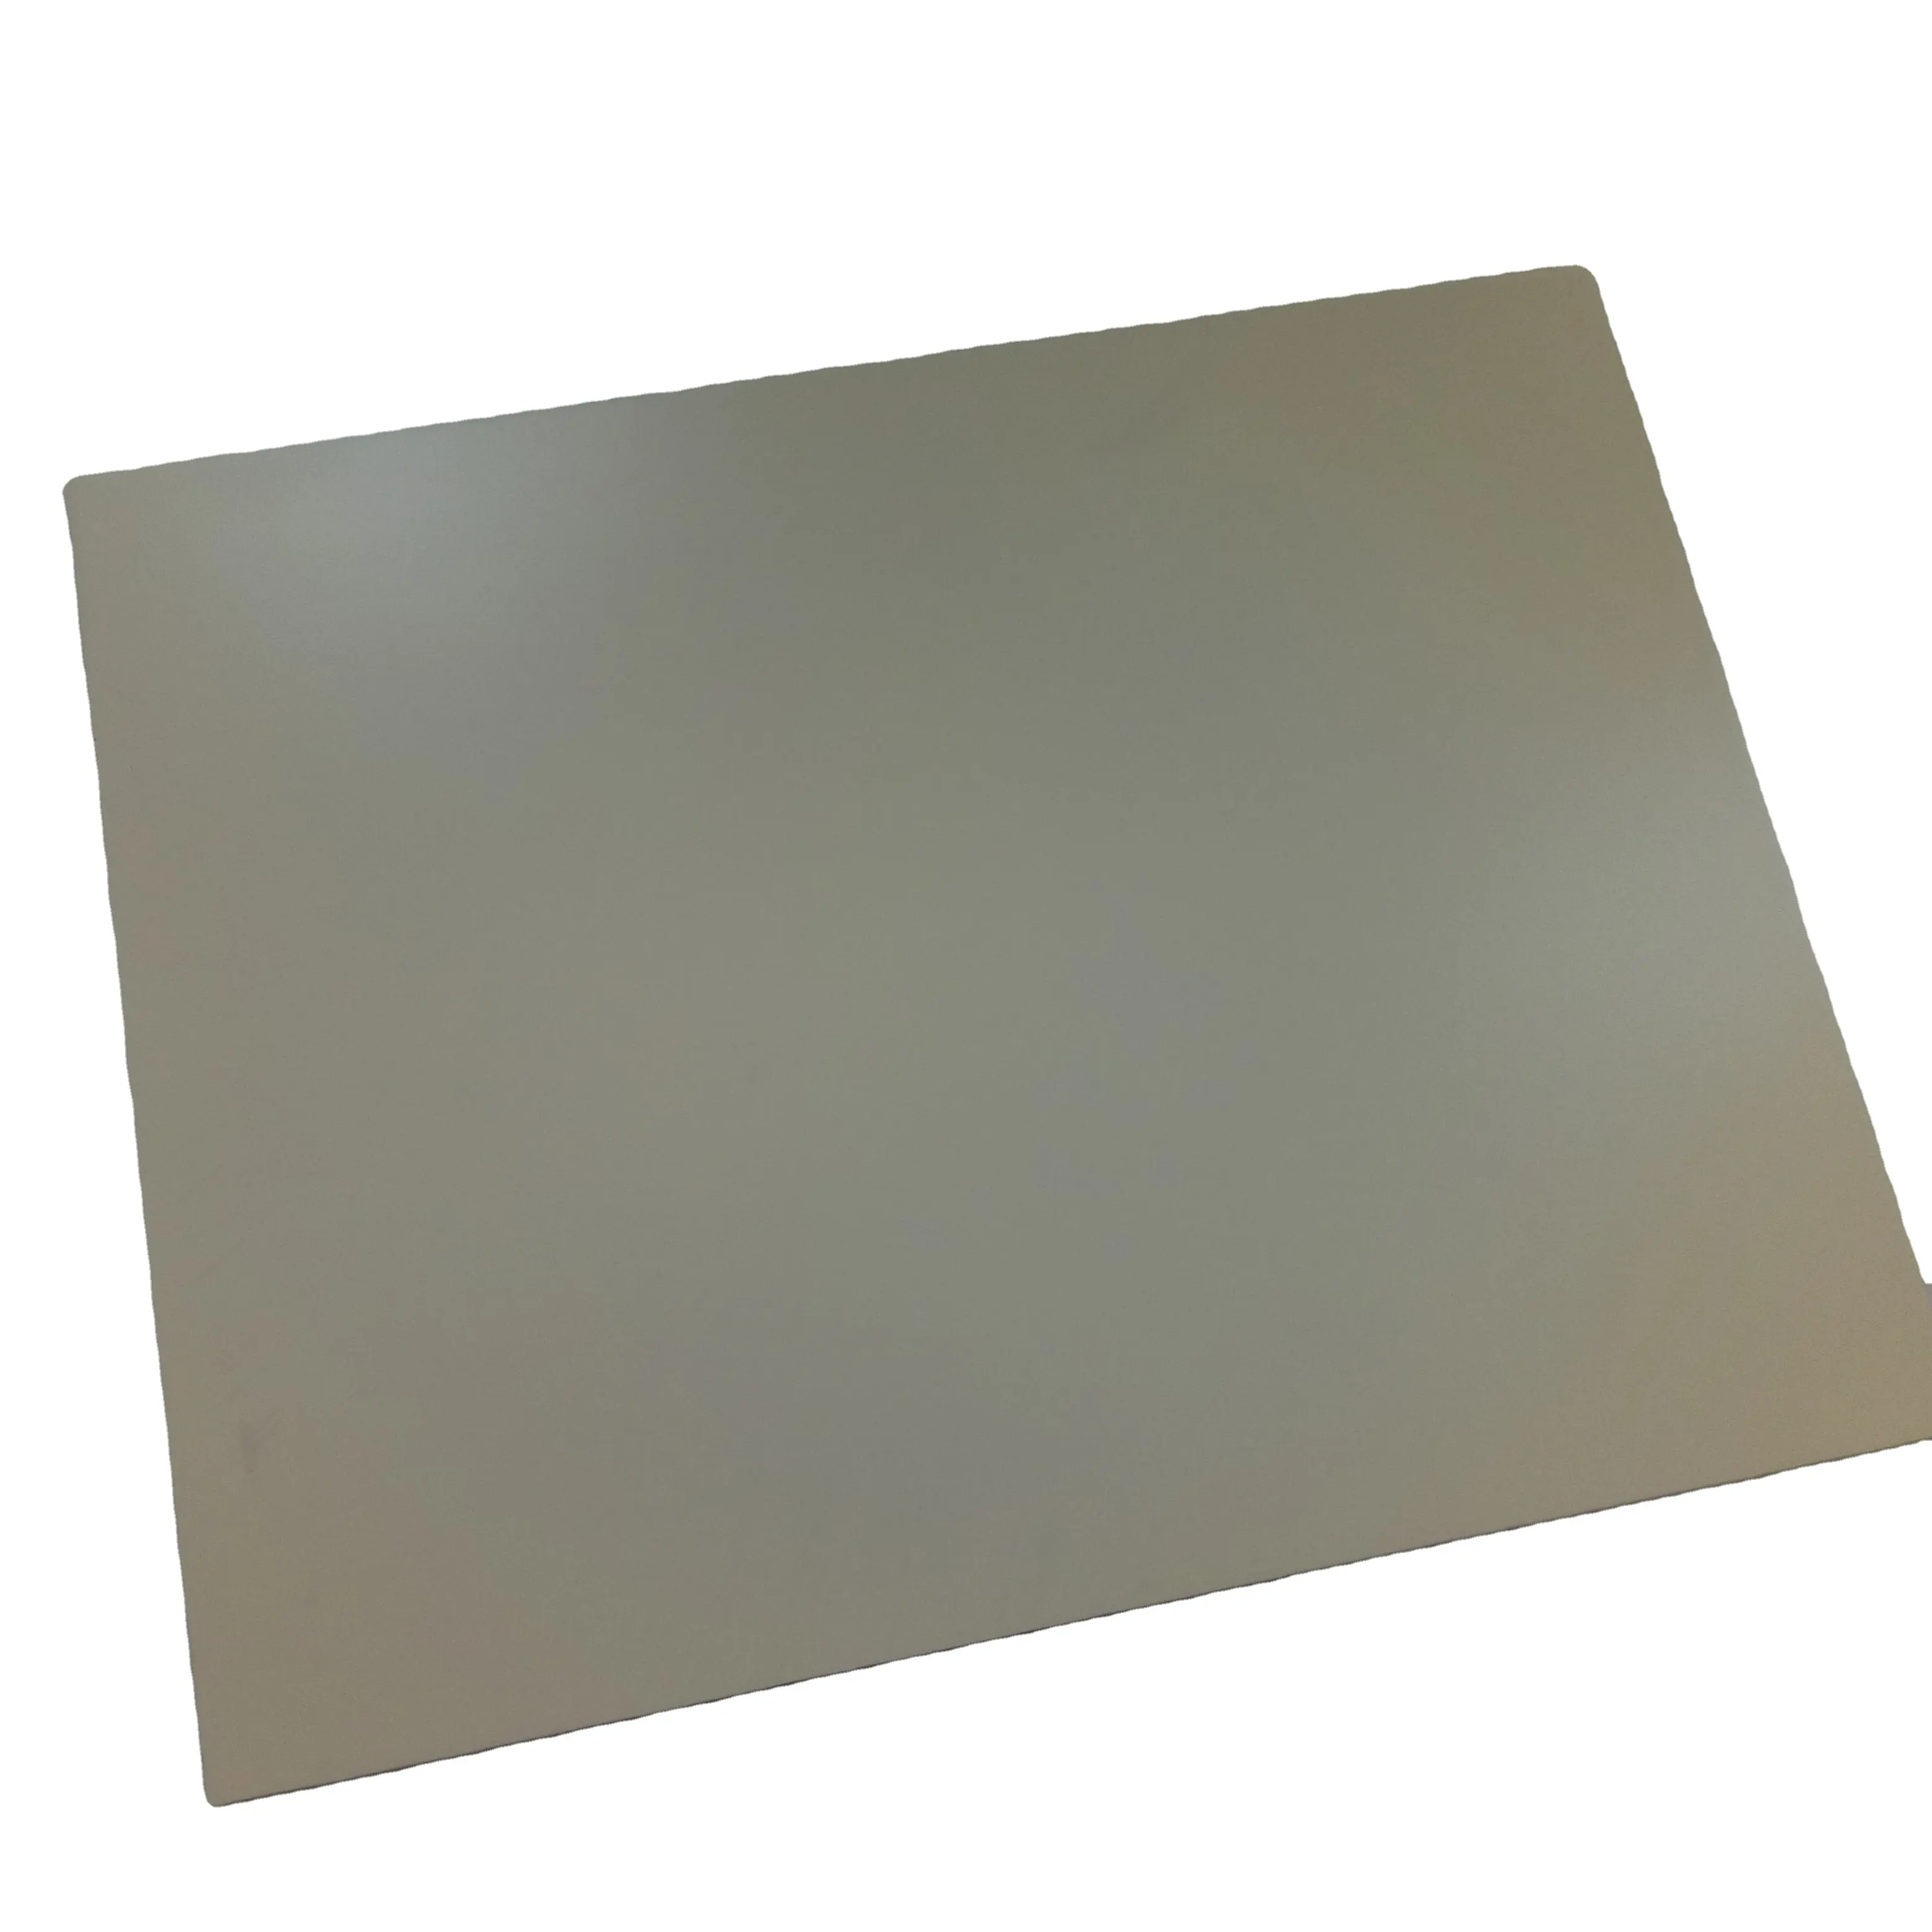 경쟁력있는 가격의 복합 패널/4x8 Acp 시트 PVDF 알루미늄 알루미늄 복합 플라스틱 패널 야외 내화